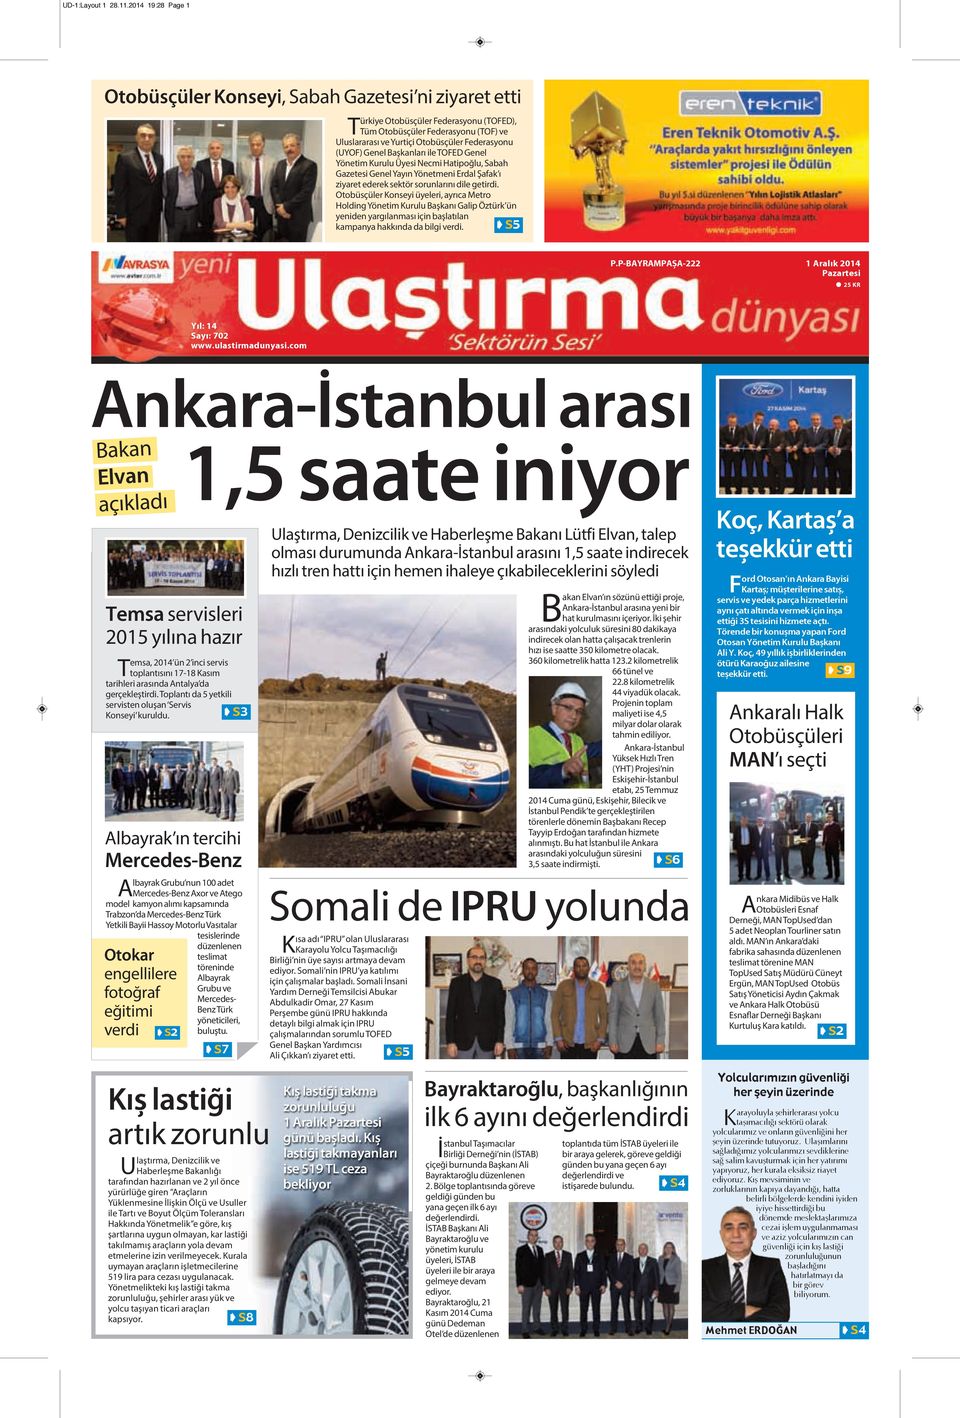 (UYOF) Genel Başkanları ile TOFED Genel Yönetim Kurulu Üyesi Necmi Hatipoğlu, Sabah Gazetesi Genel Yayın Yönetmeni Erdal Şafak ı ziyaret ederek sektör sorunlarını dile getirdi.